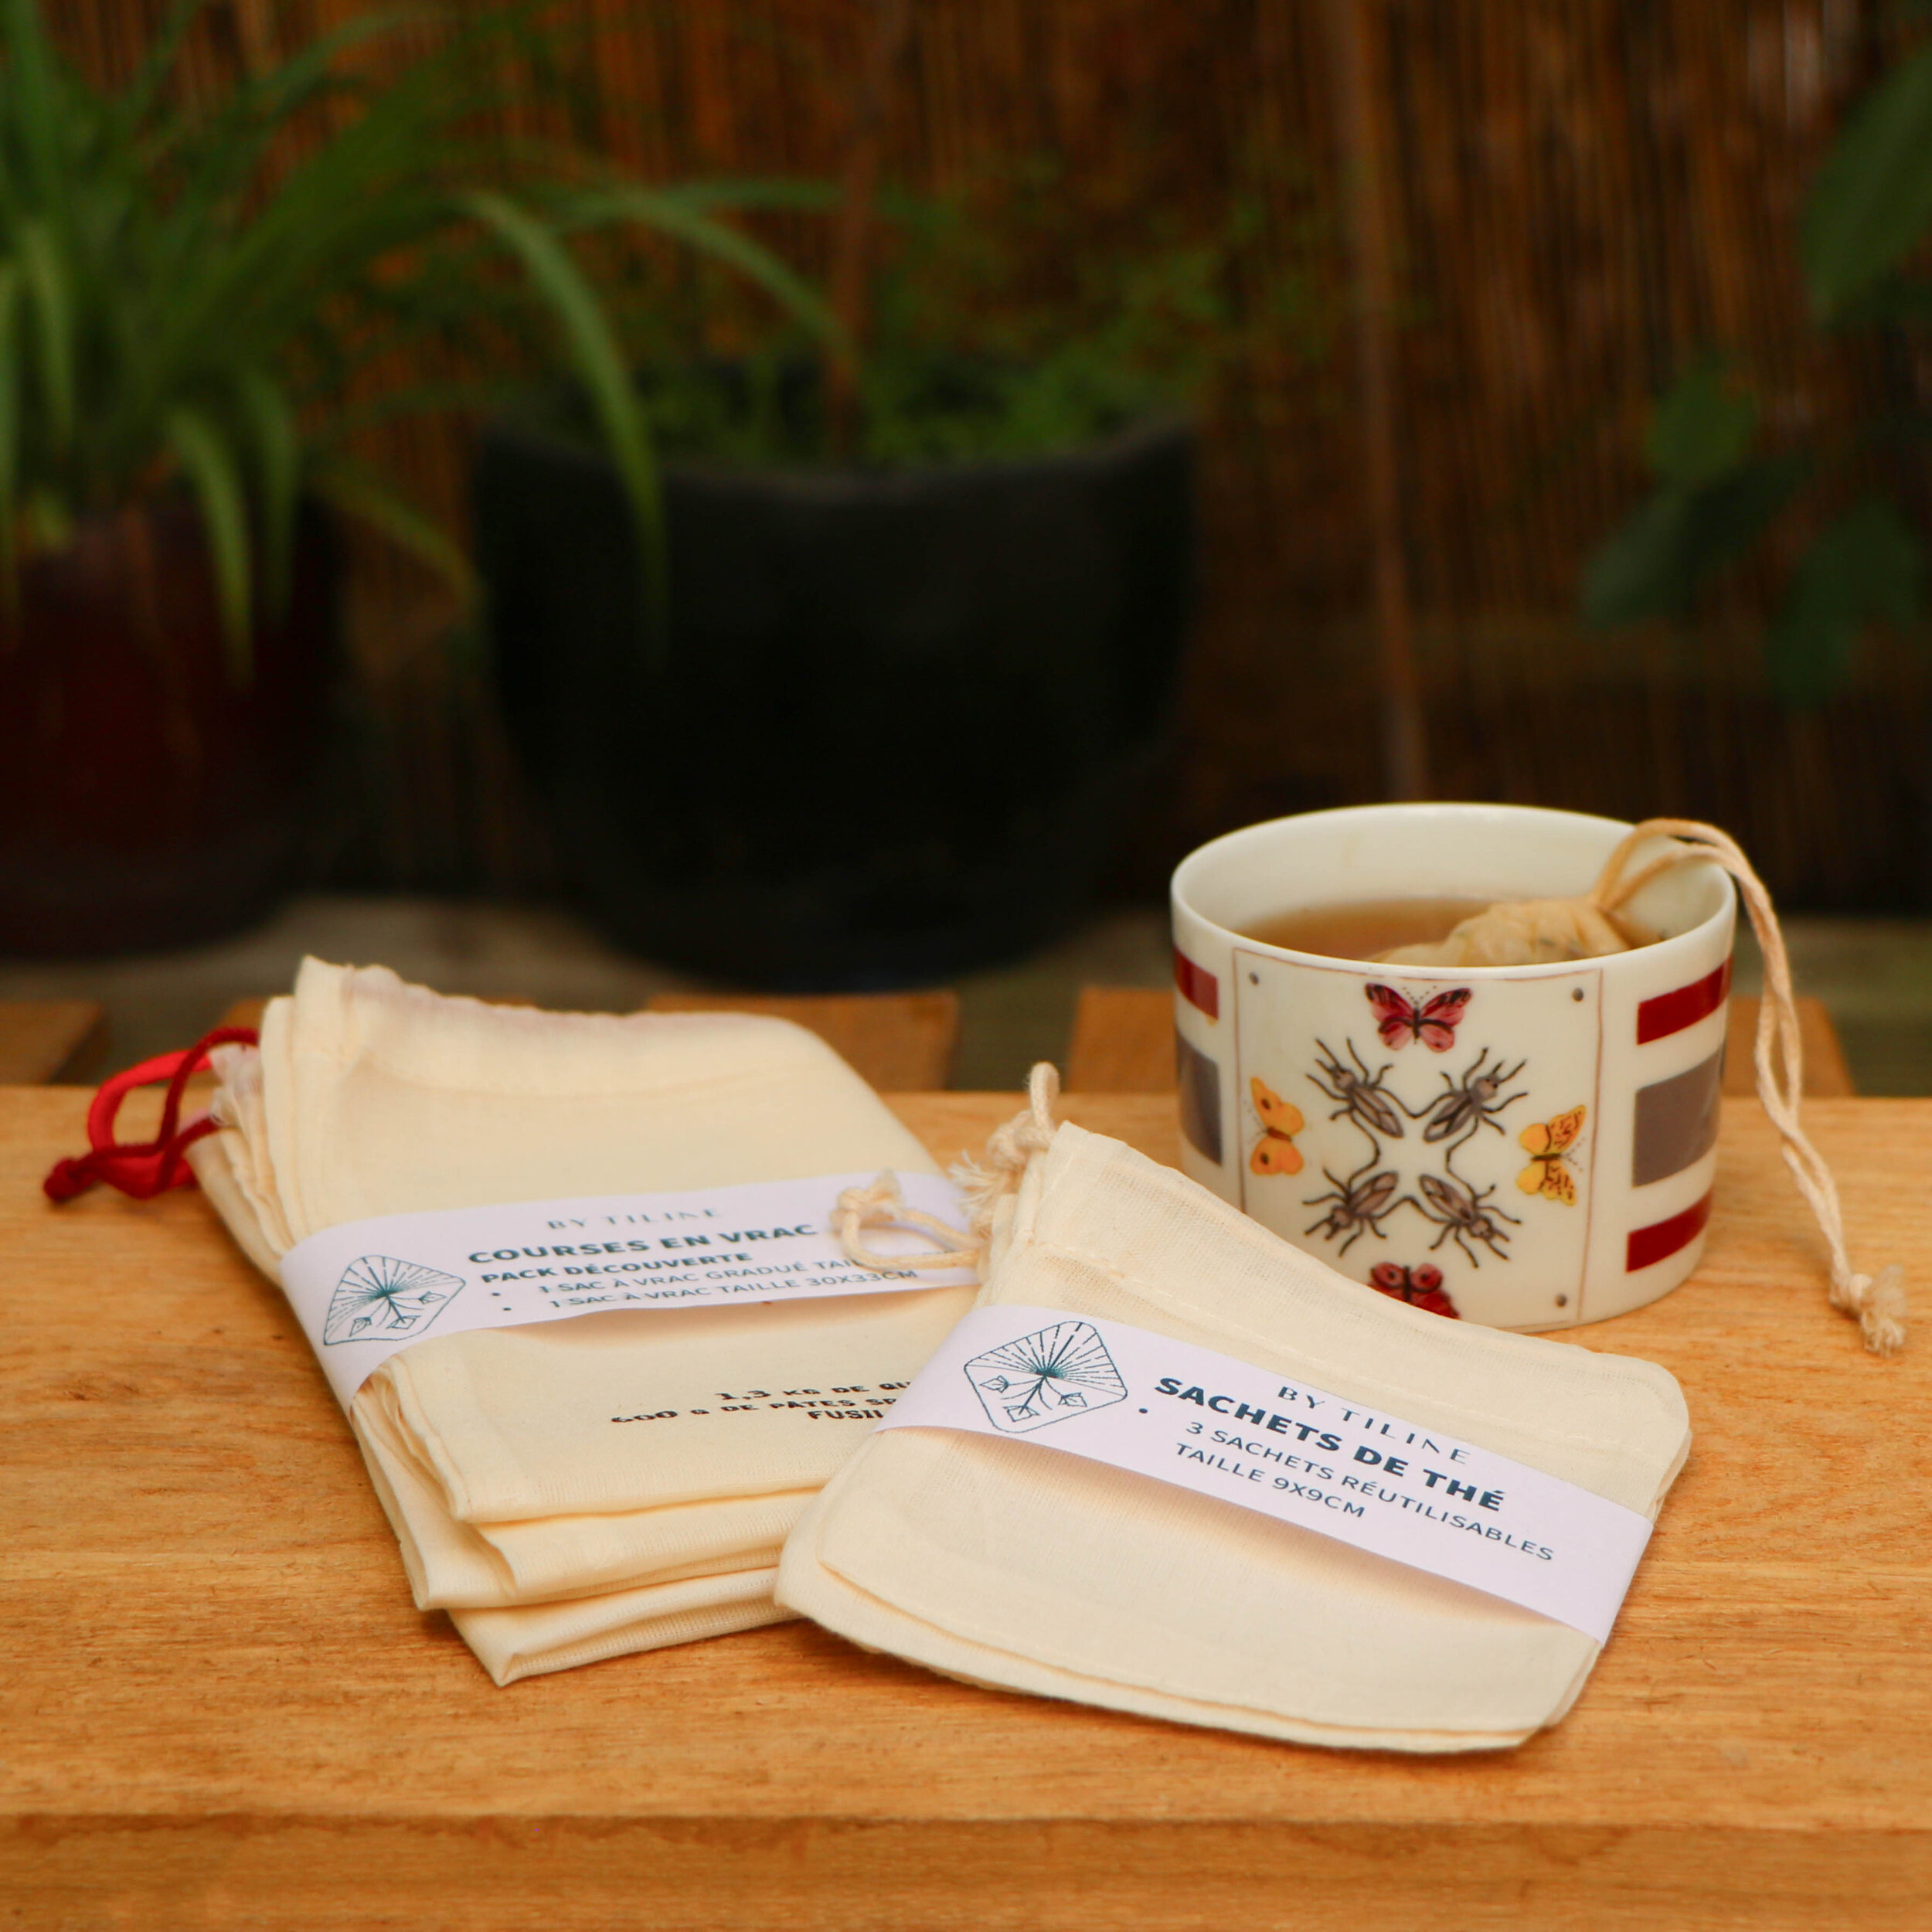 Sachet à thé réutilisable en tissu bio